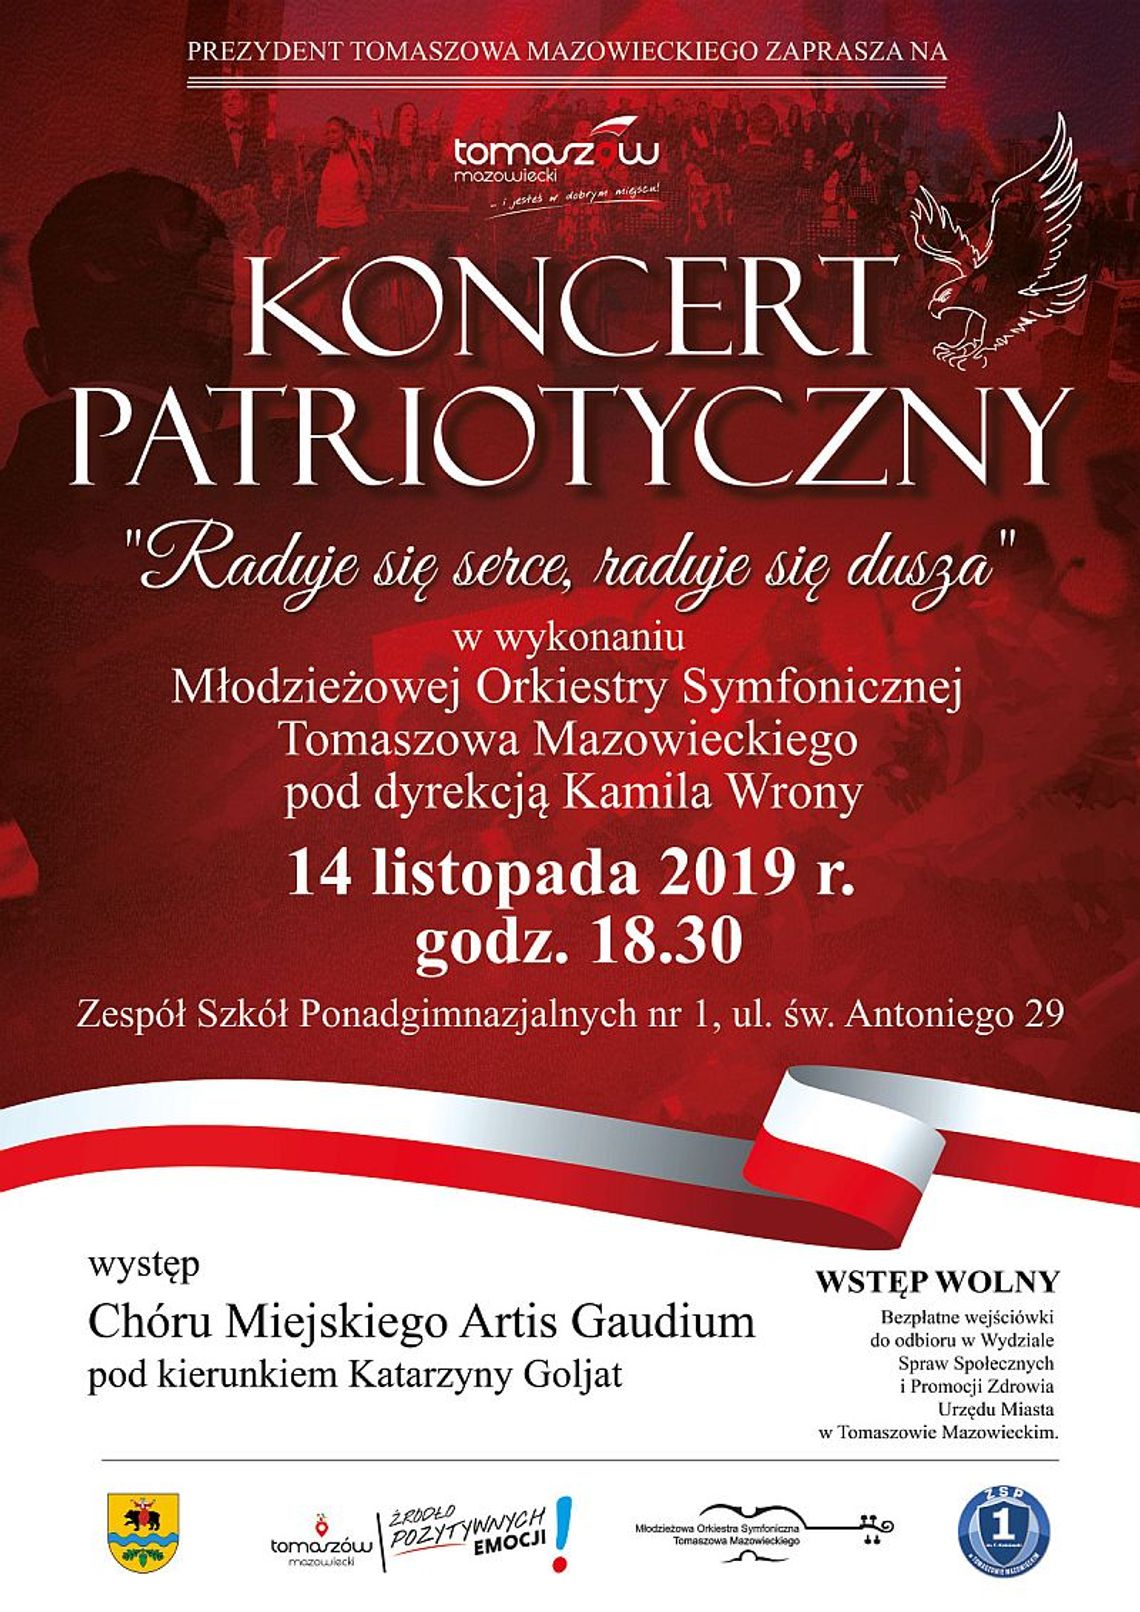 Koncert patriotyczny „Raduje się serce, raduje się dusza” w wykonaniu Młodzieżowej Orkiestry Symfonicznej Tomaszowa Mazowieckiego    